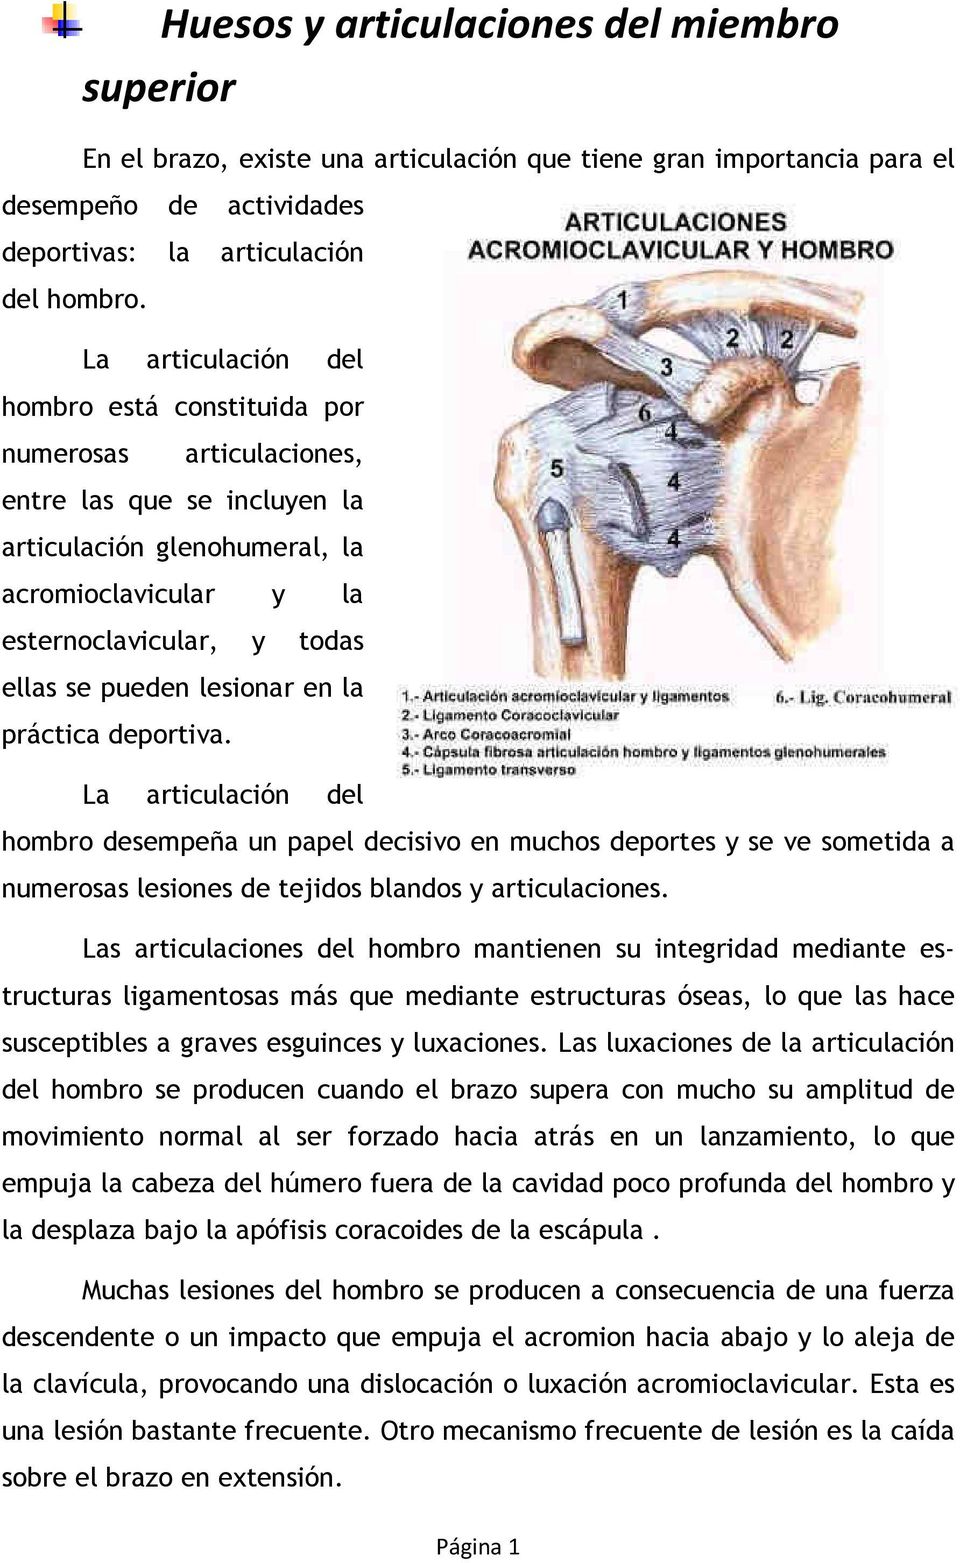 lesionar en la práctica deportiva. La articulación del hombro desempeña un papel decisivo en muchos deportes y se ve sometida a numerosas lesiones de tejidos blandos y articulaciones.